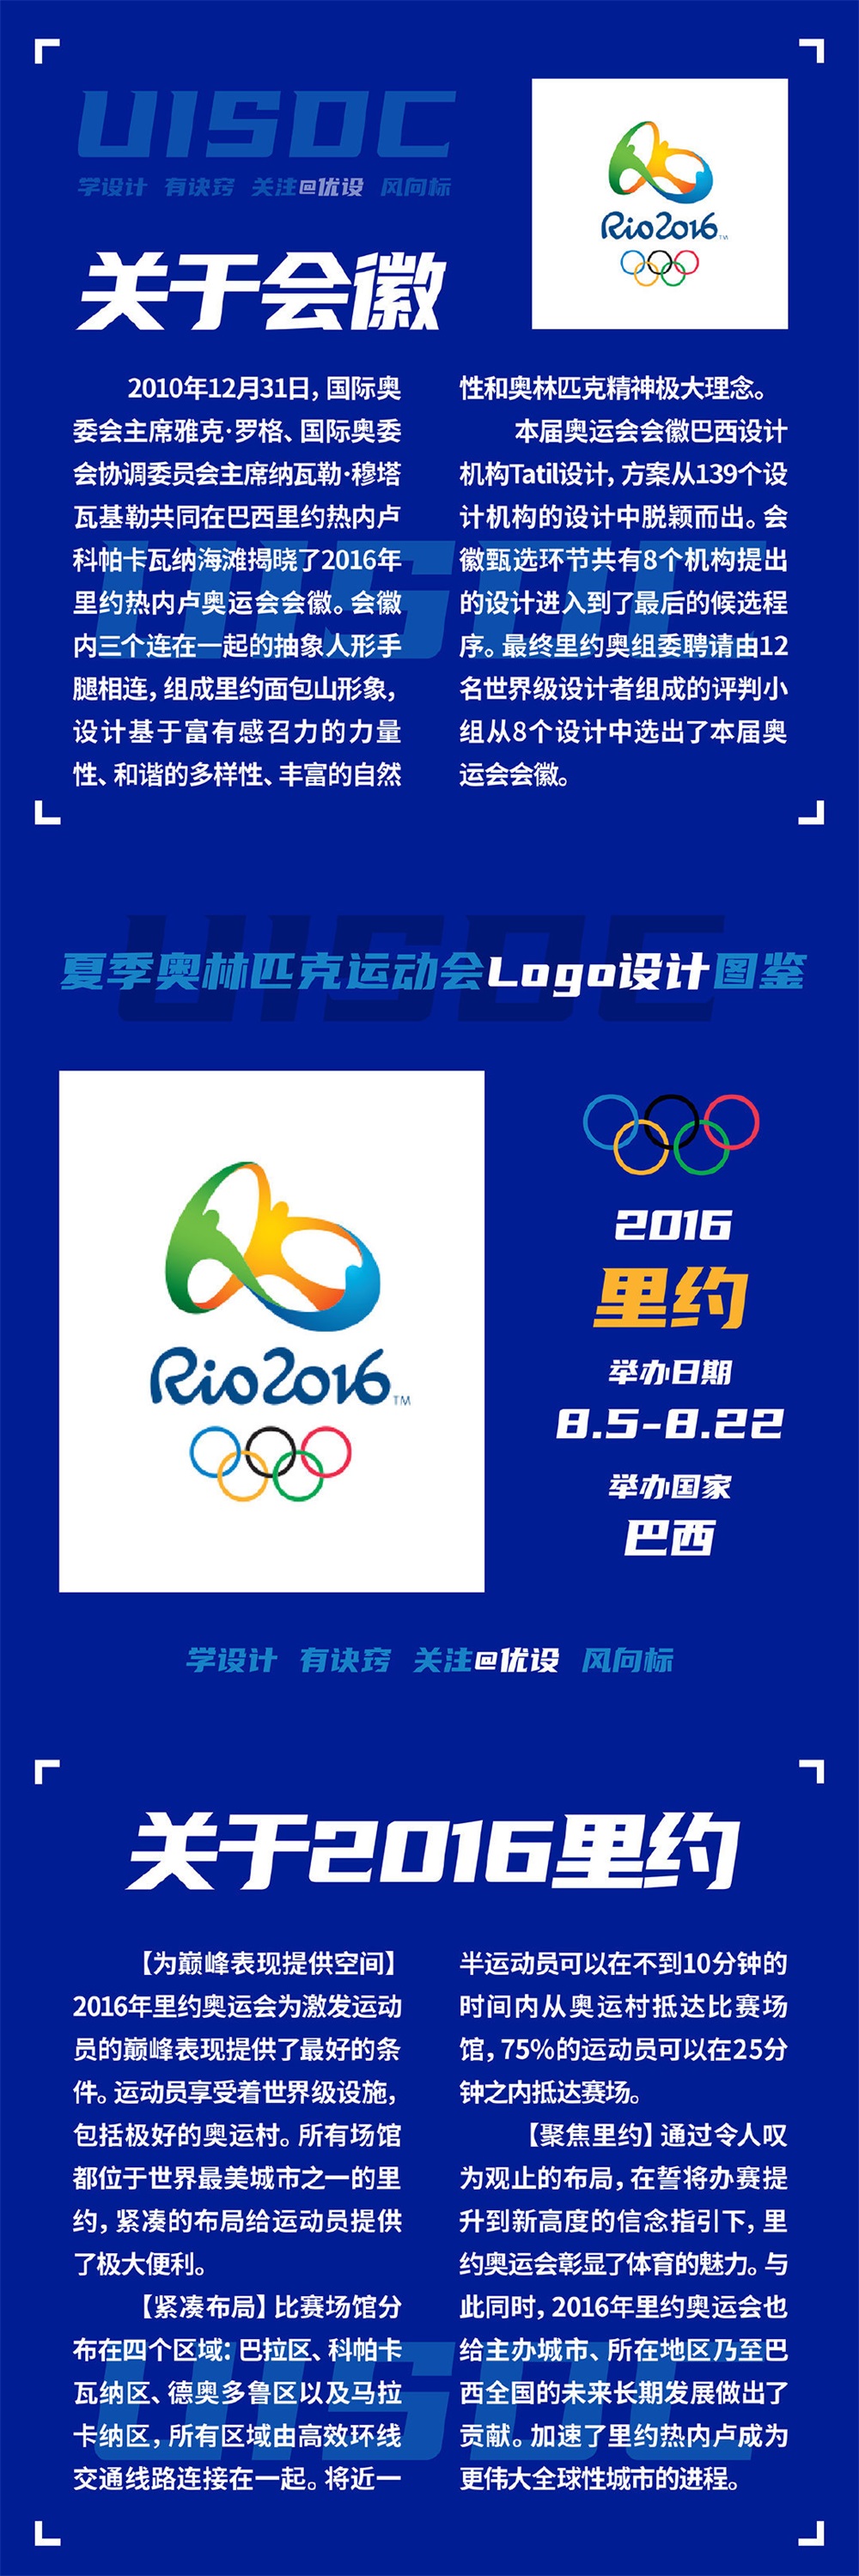 奥林匹克运动会logo设计图鉴